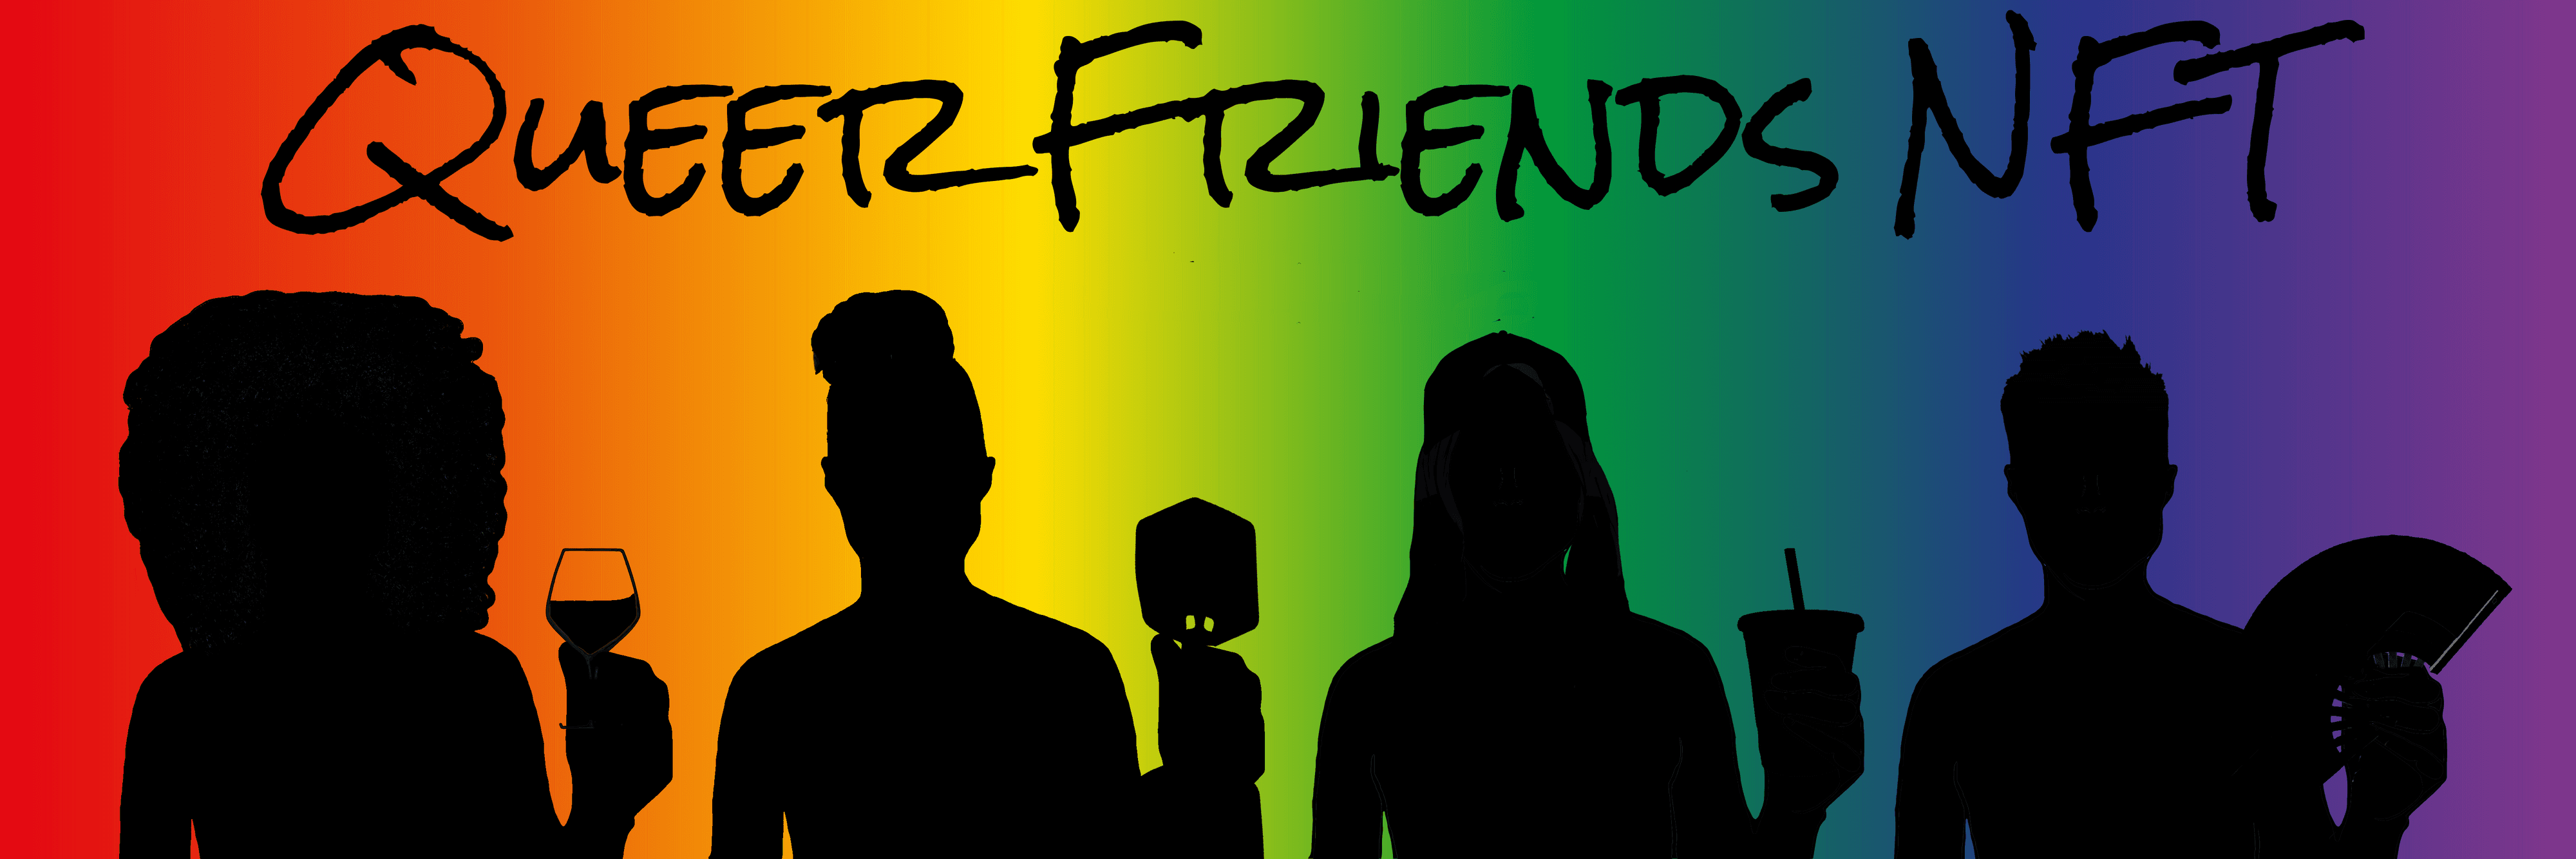 QueerFriendsNFT banner